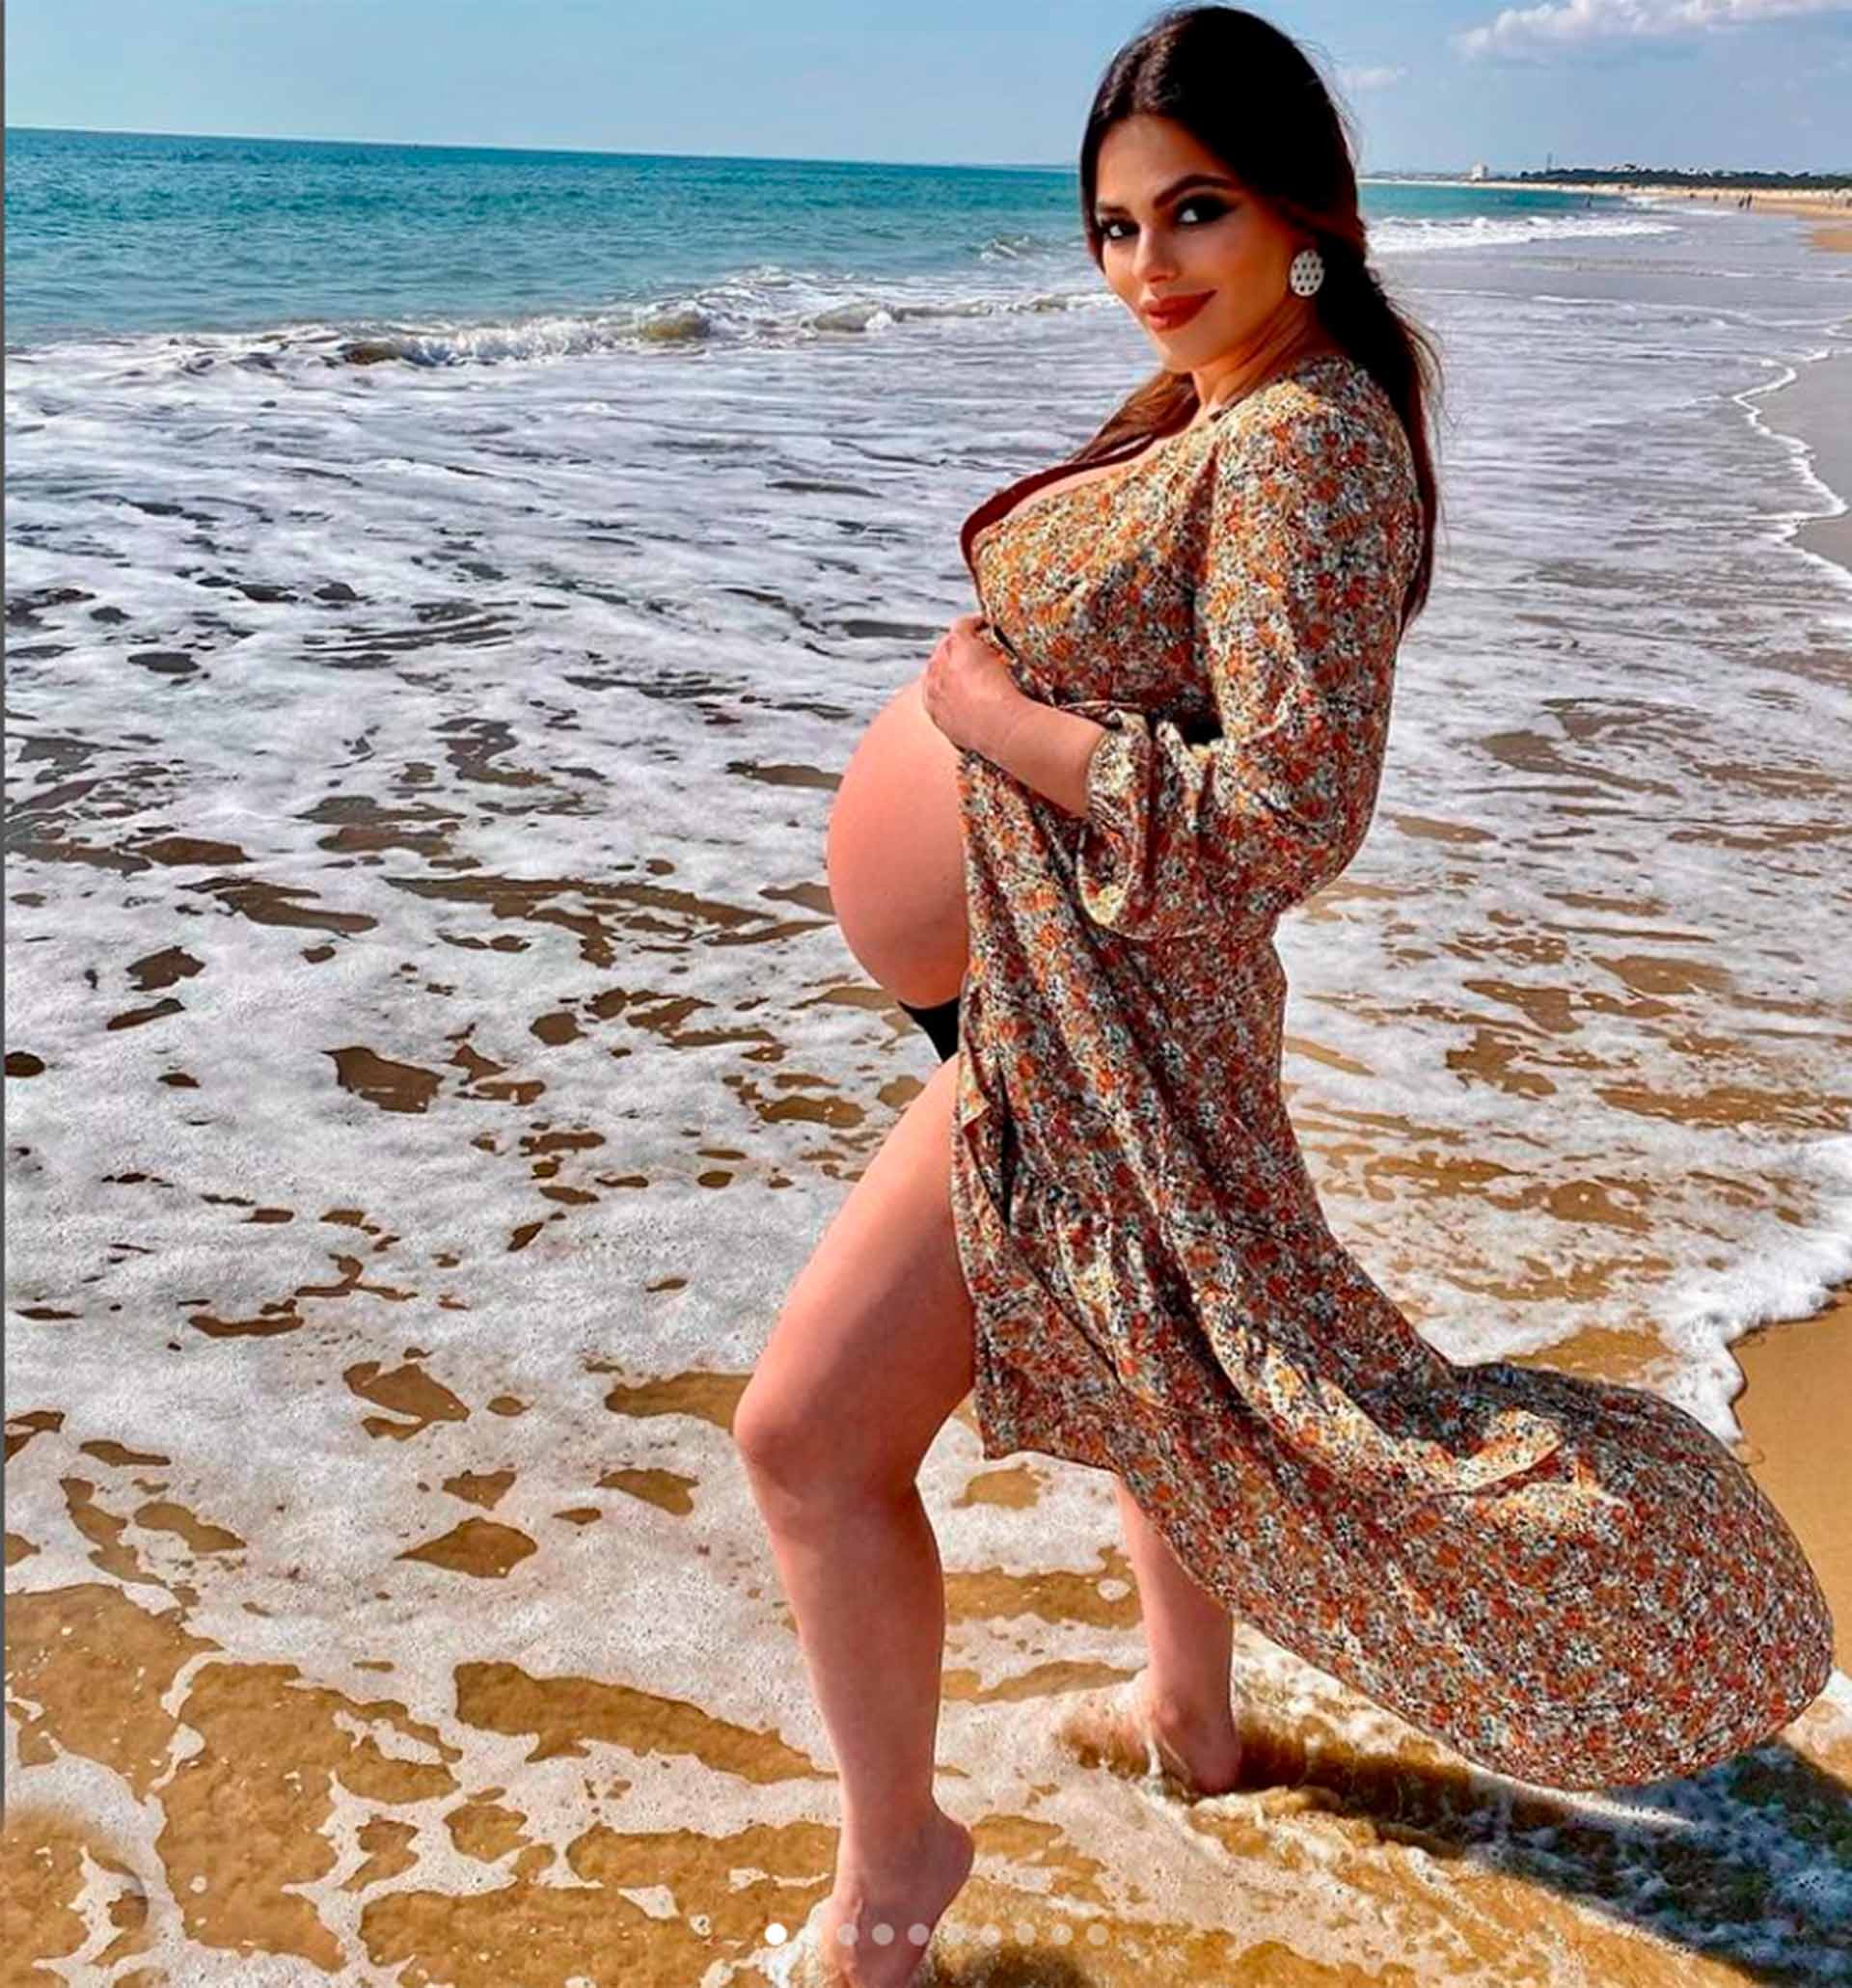 Marisa-Jara embarazada